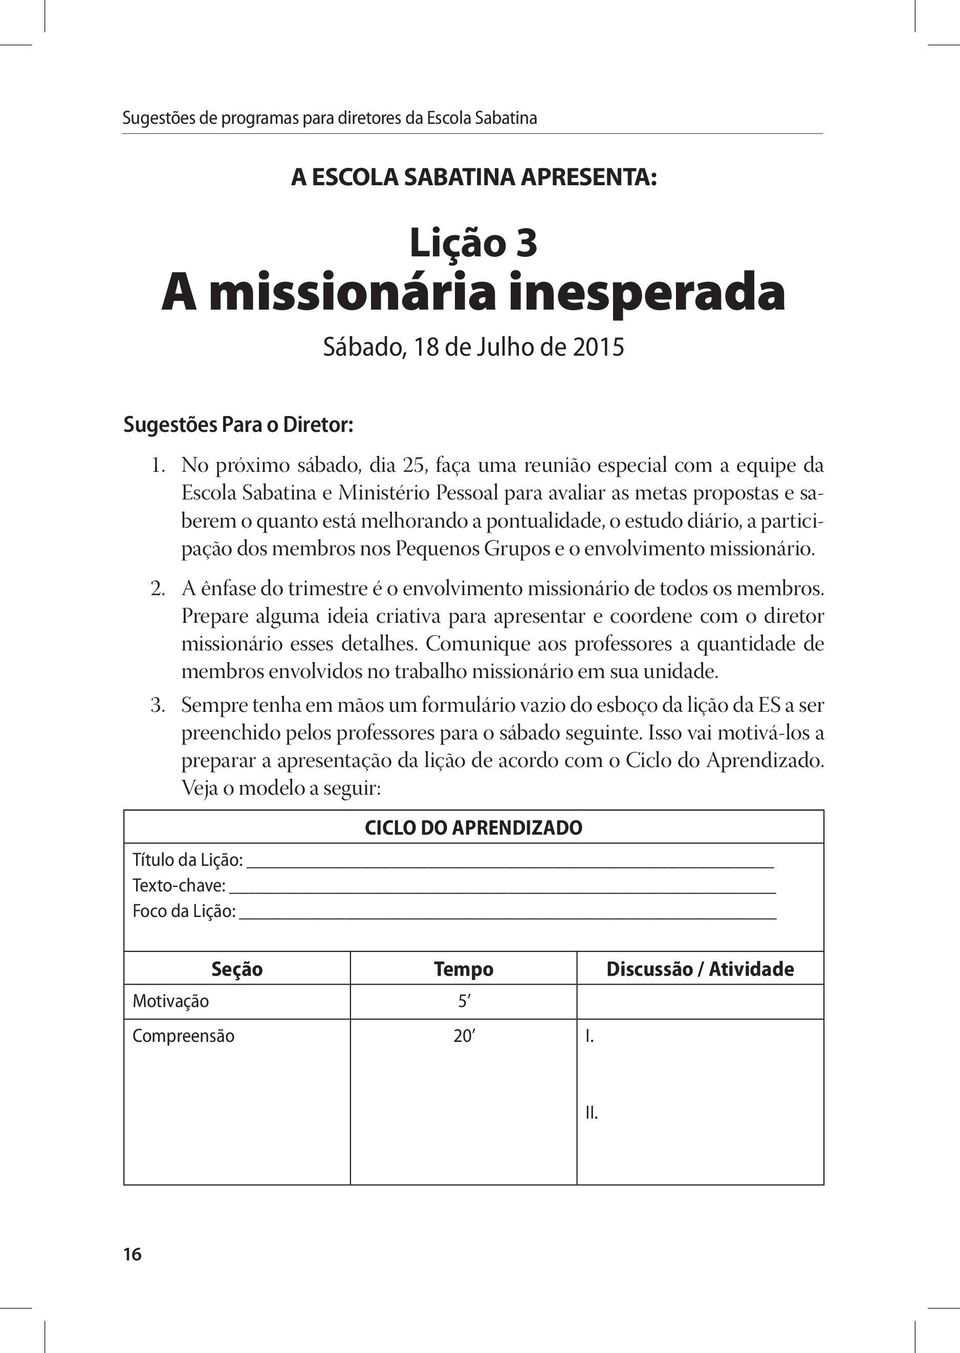 diário, a participação dos membros nos Pequenos Grupos e o envolvimento missionário. 2. A ênfase do trimestre é o envolvimento missionário de todos os membros.